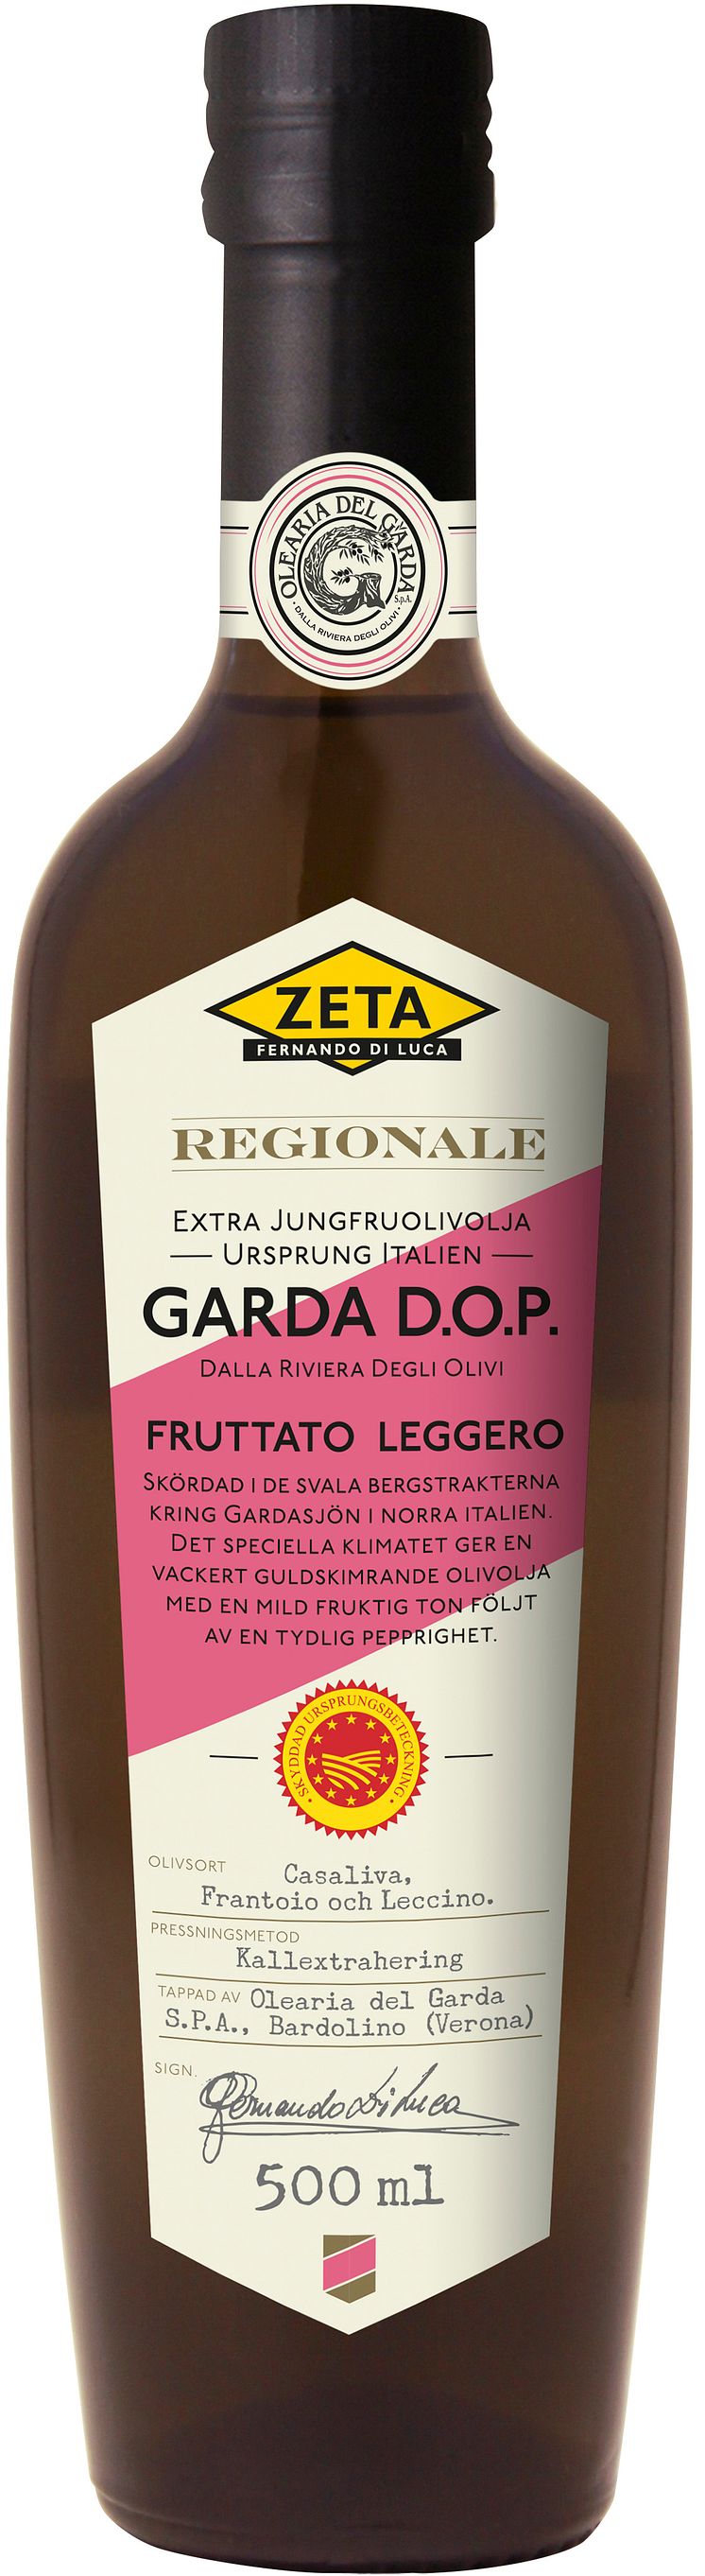 Zeta Regionolja Garda D.O.P.